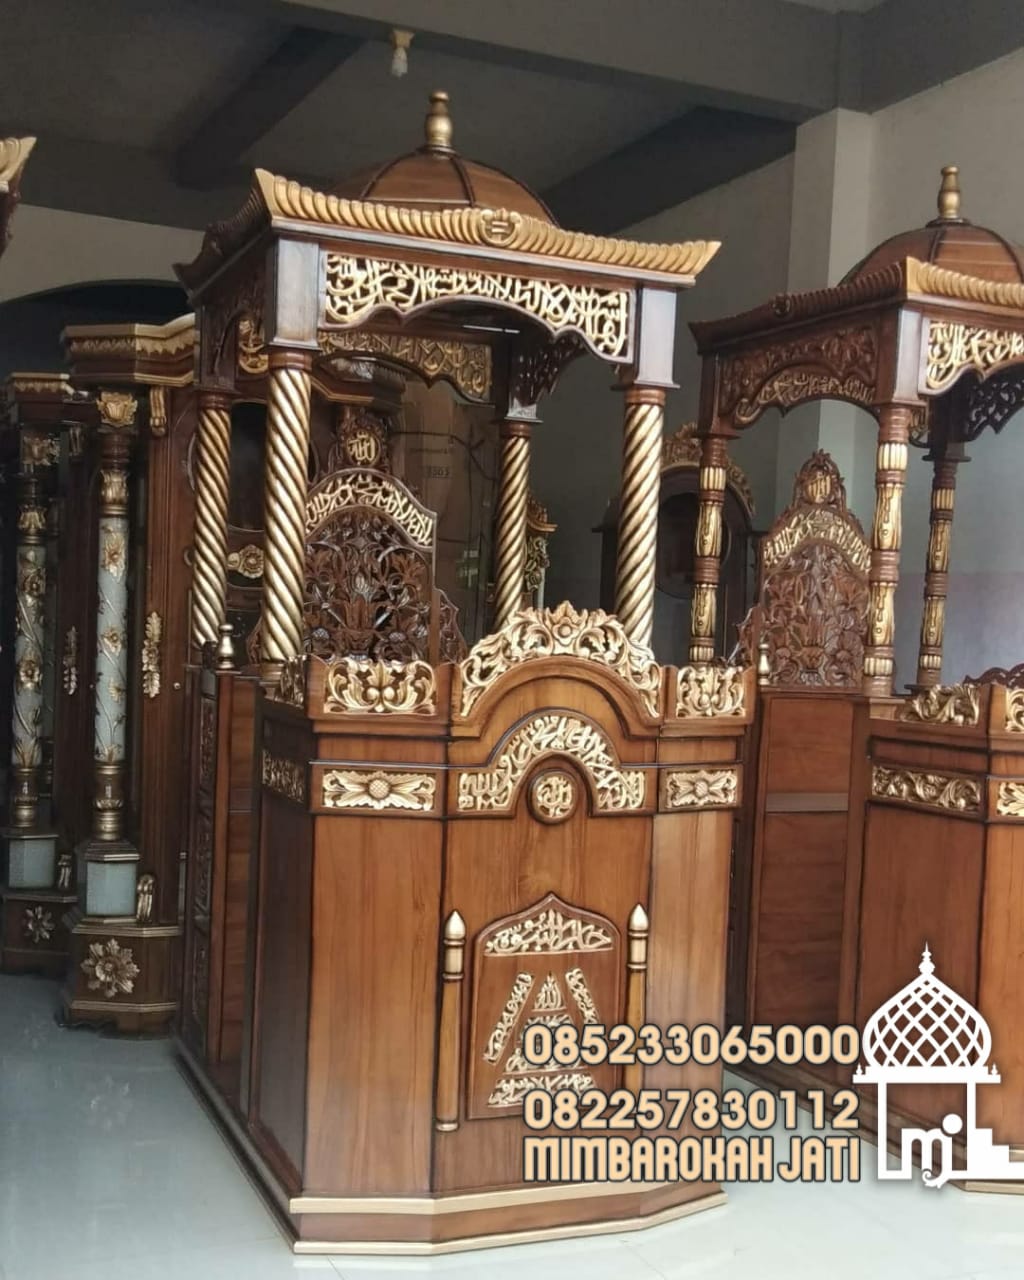 Mimbar Podium Ornamen Ukiran Masjid Besar Tarakan